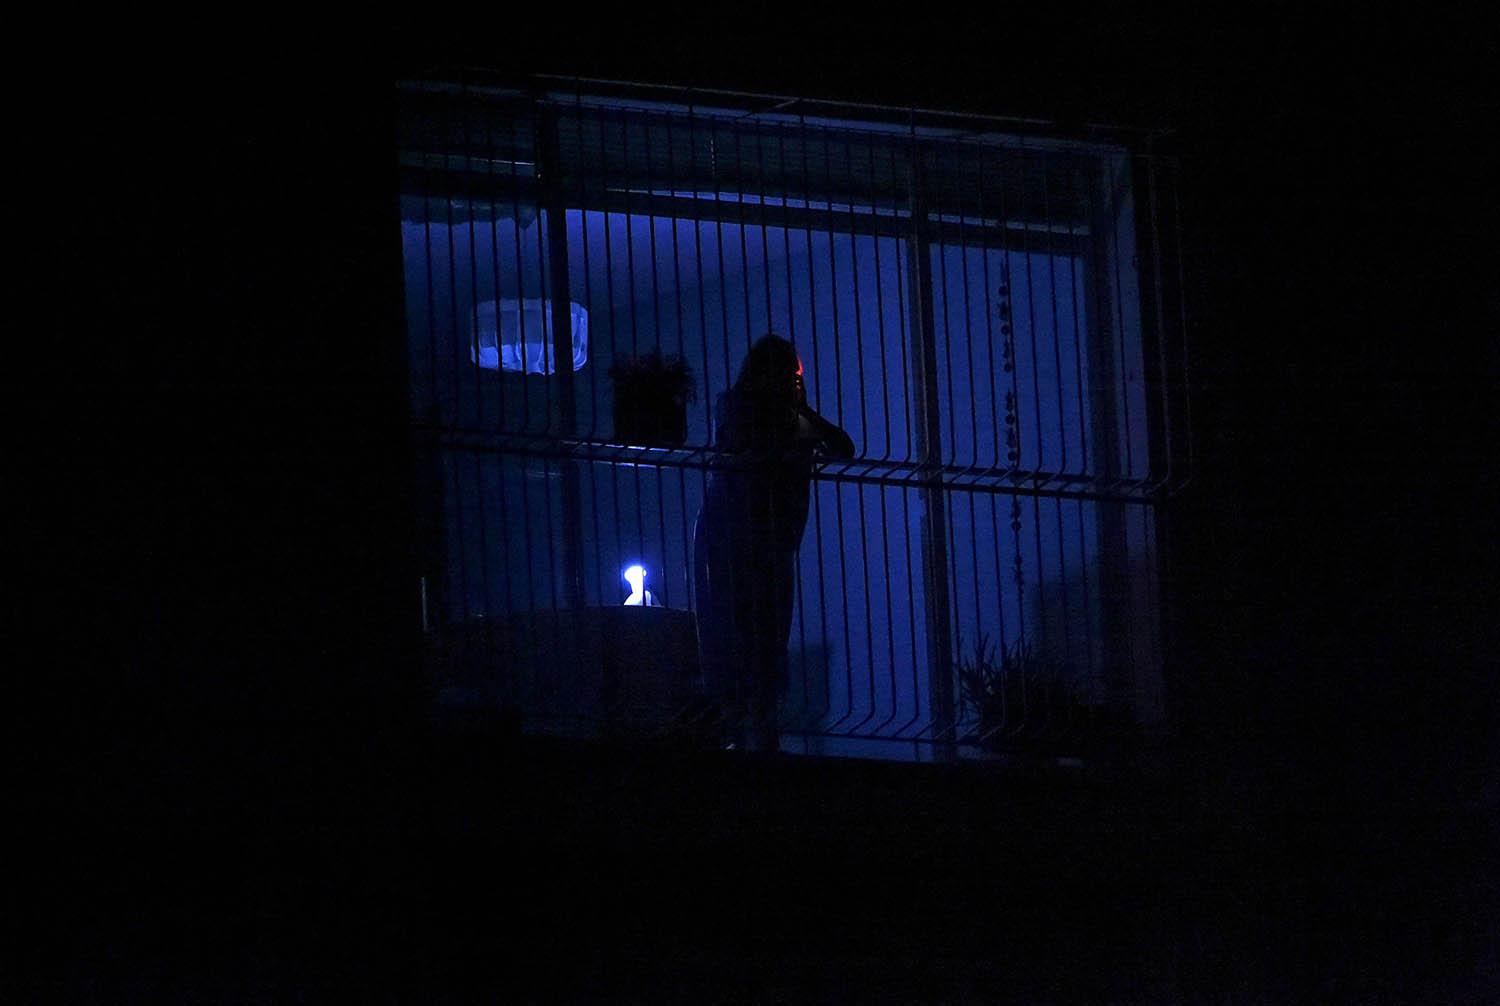 إمرأة فنزويلية تطل من شباك في كراكاس خلال انقطاع تام للتيار الكهربائي